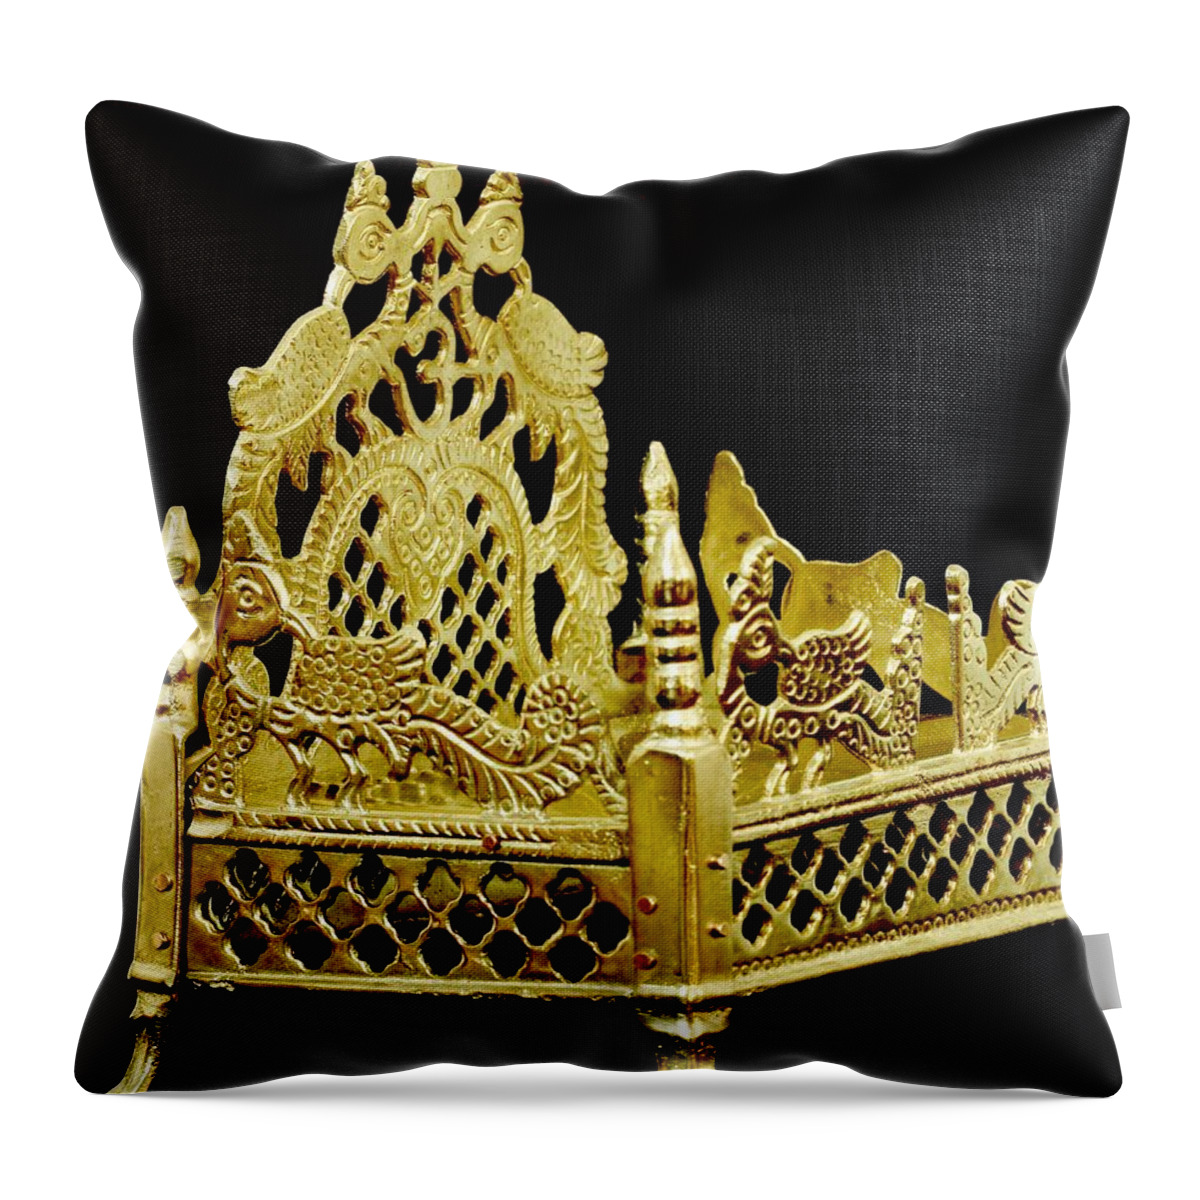 Brass Filigree Work Throw Pillow featuring the photograph Temple Art - Brass Handicraft by Ramabhadran Thirupattur